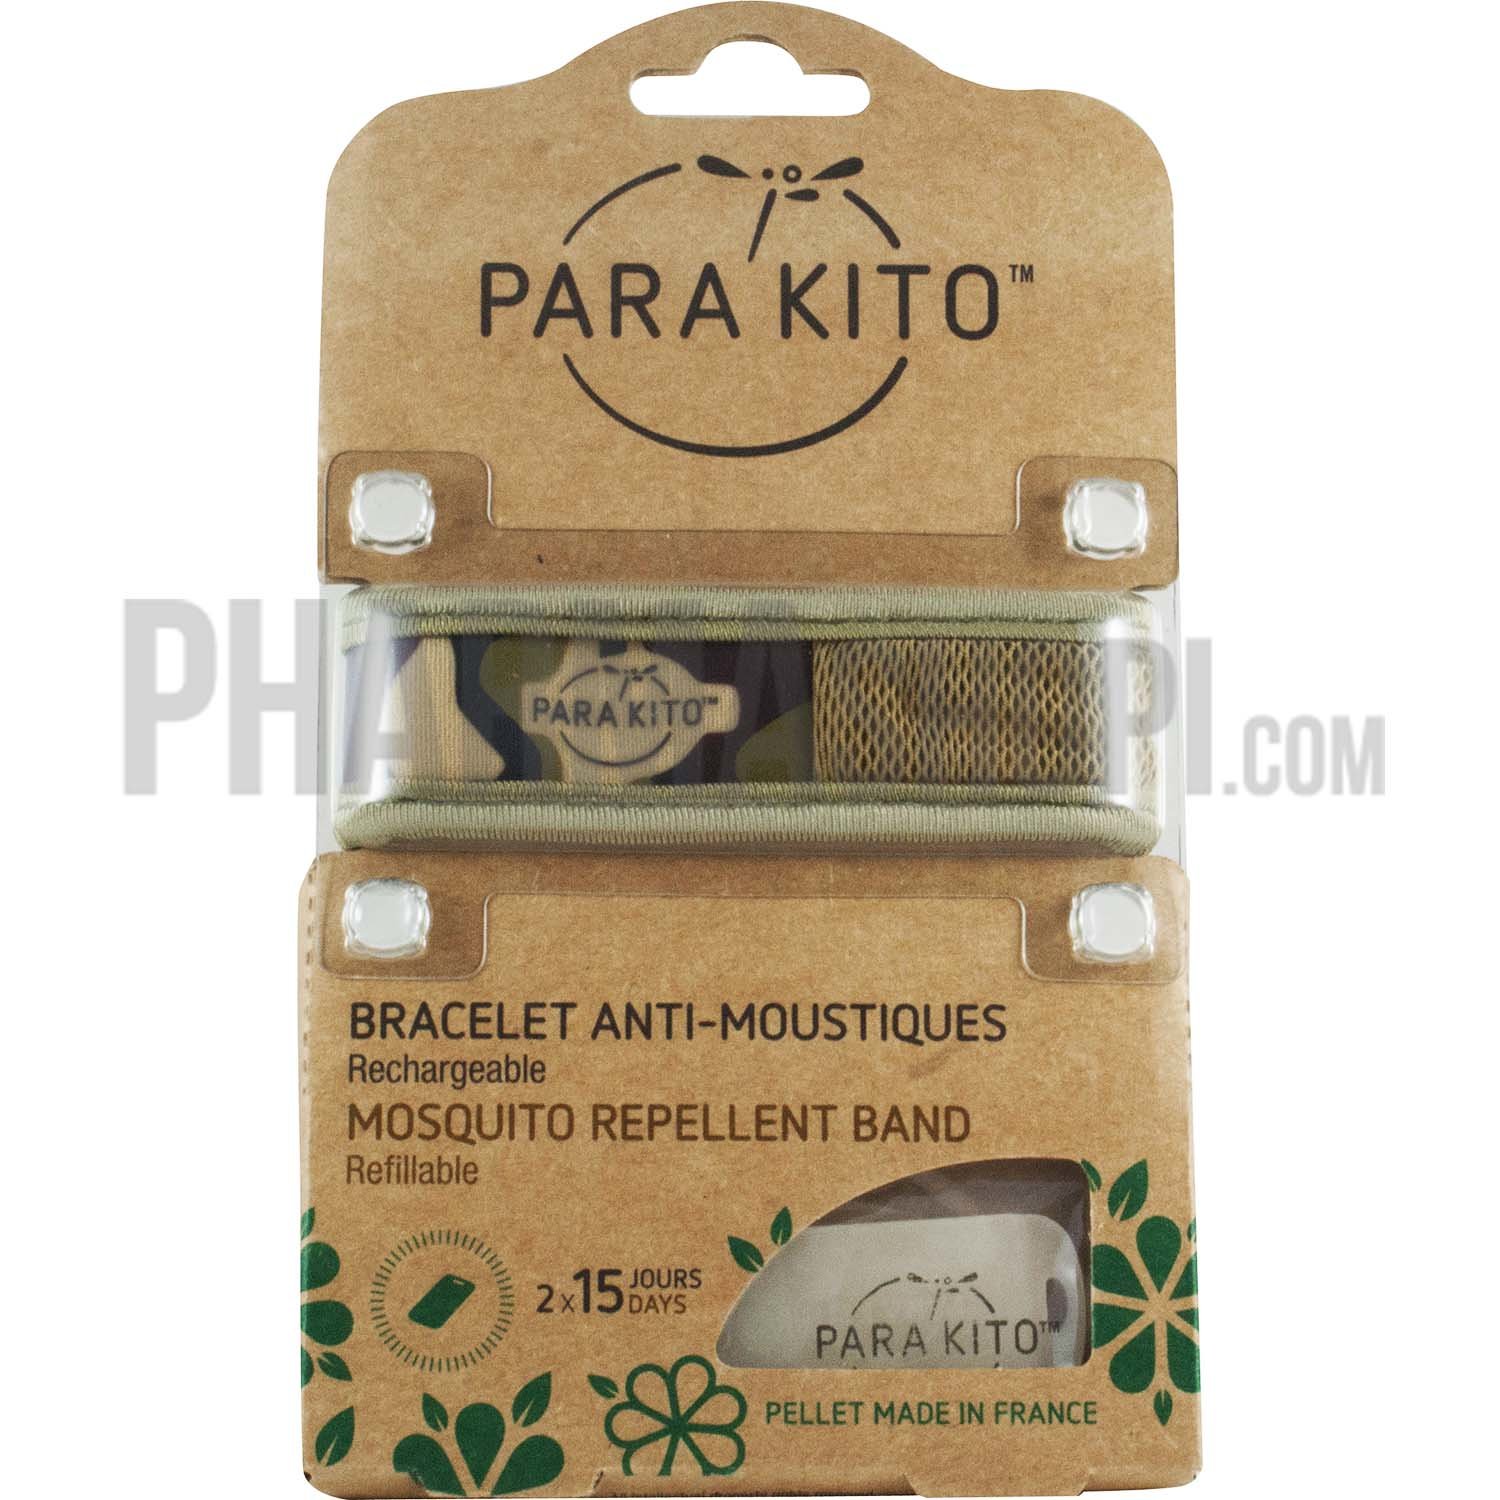 Bracelet anti-moustique rechargeable jungle militaire Para kito - 1 bracelet + 2 recharges